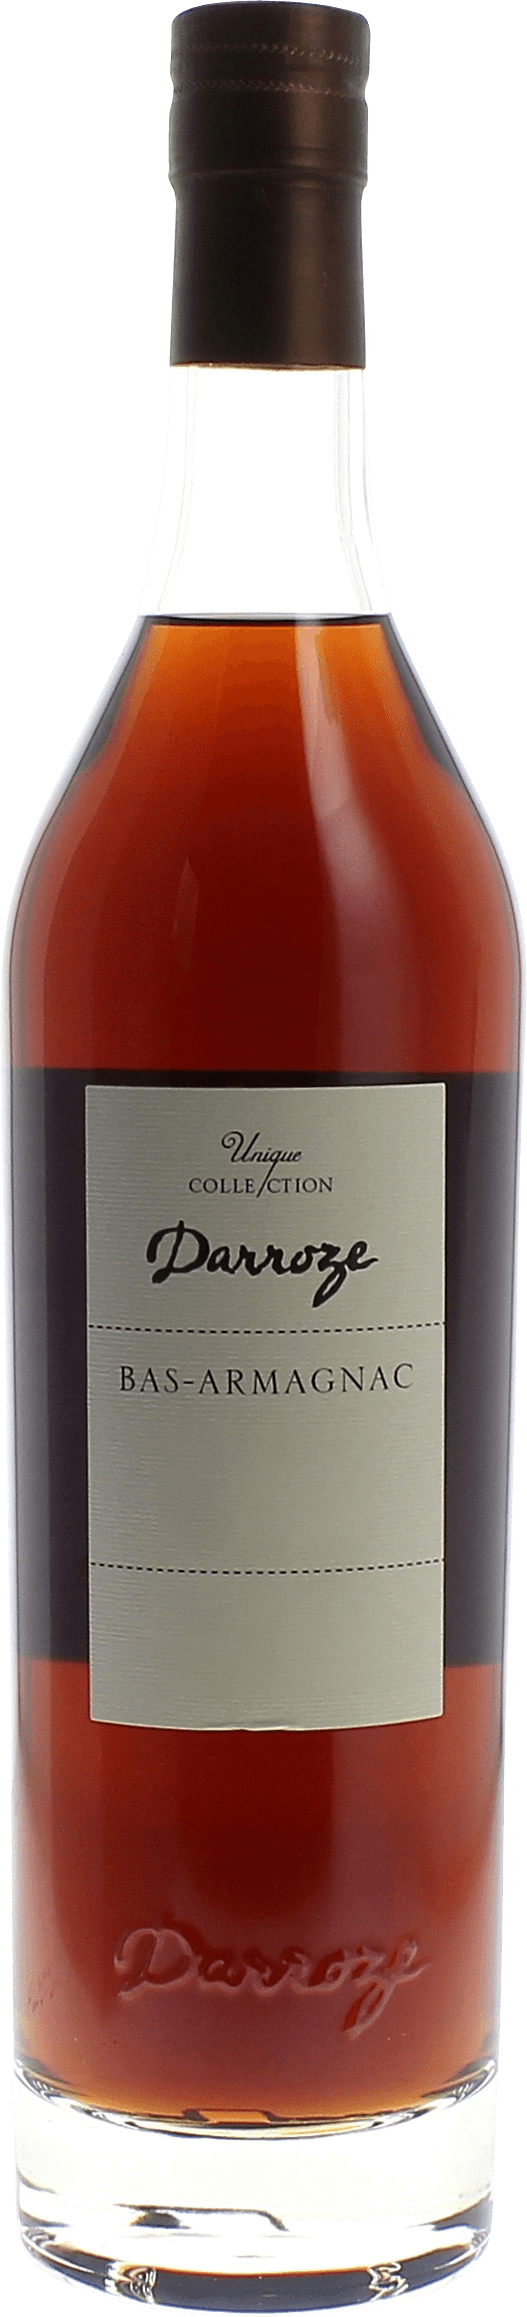 Domaine de lamarquette 48,2 1986  Bas Armagnac, DARROZE  Francis Bas Armagnac